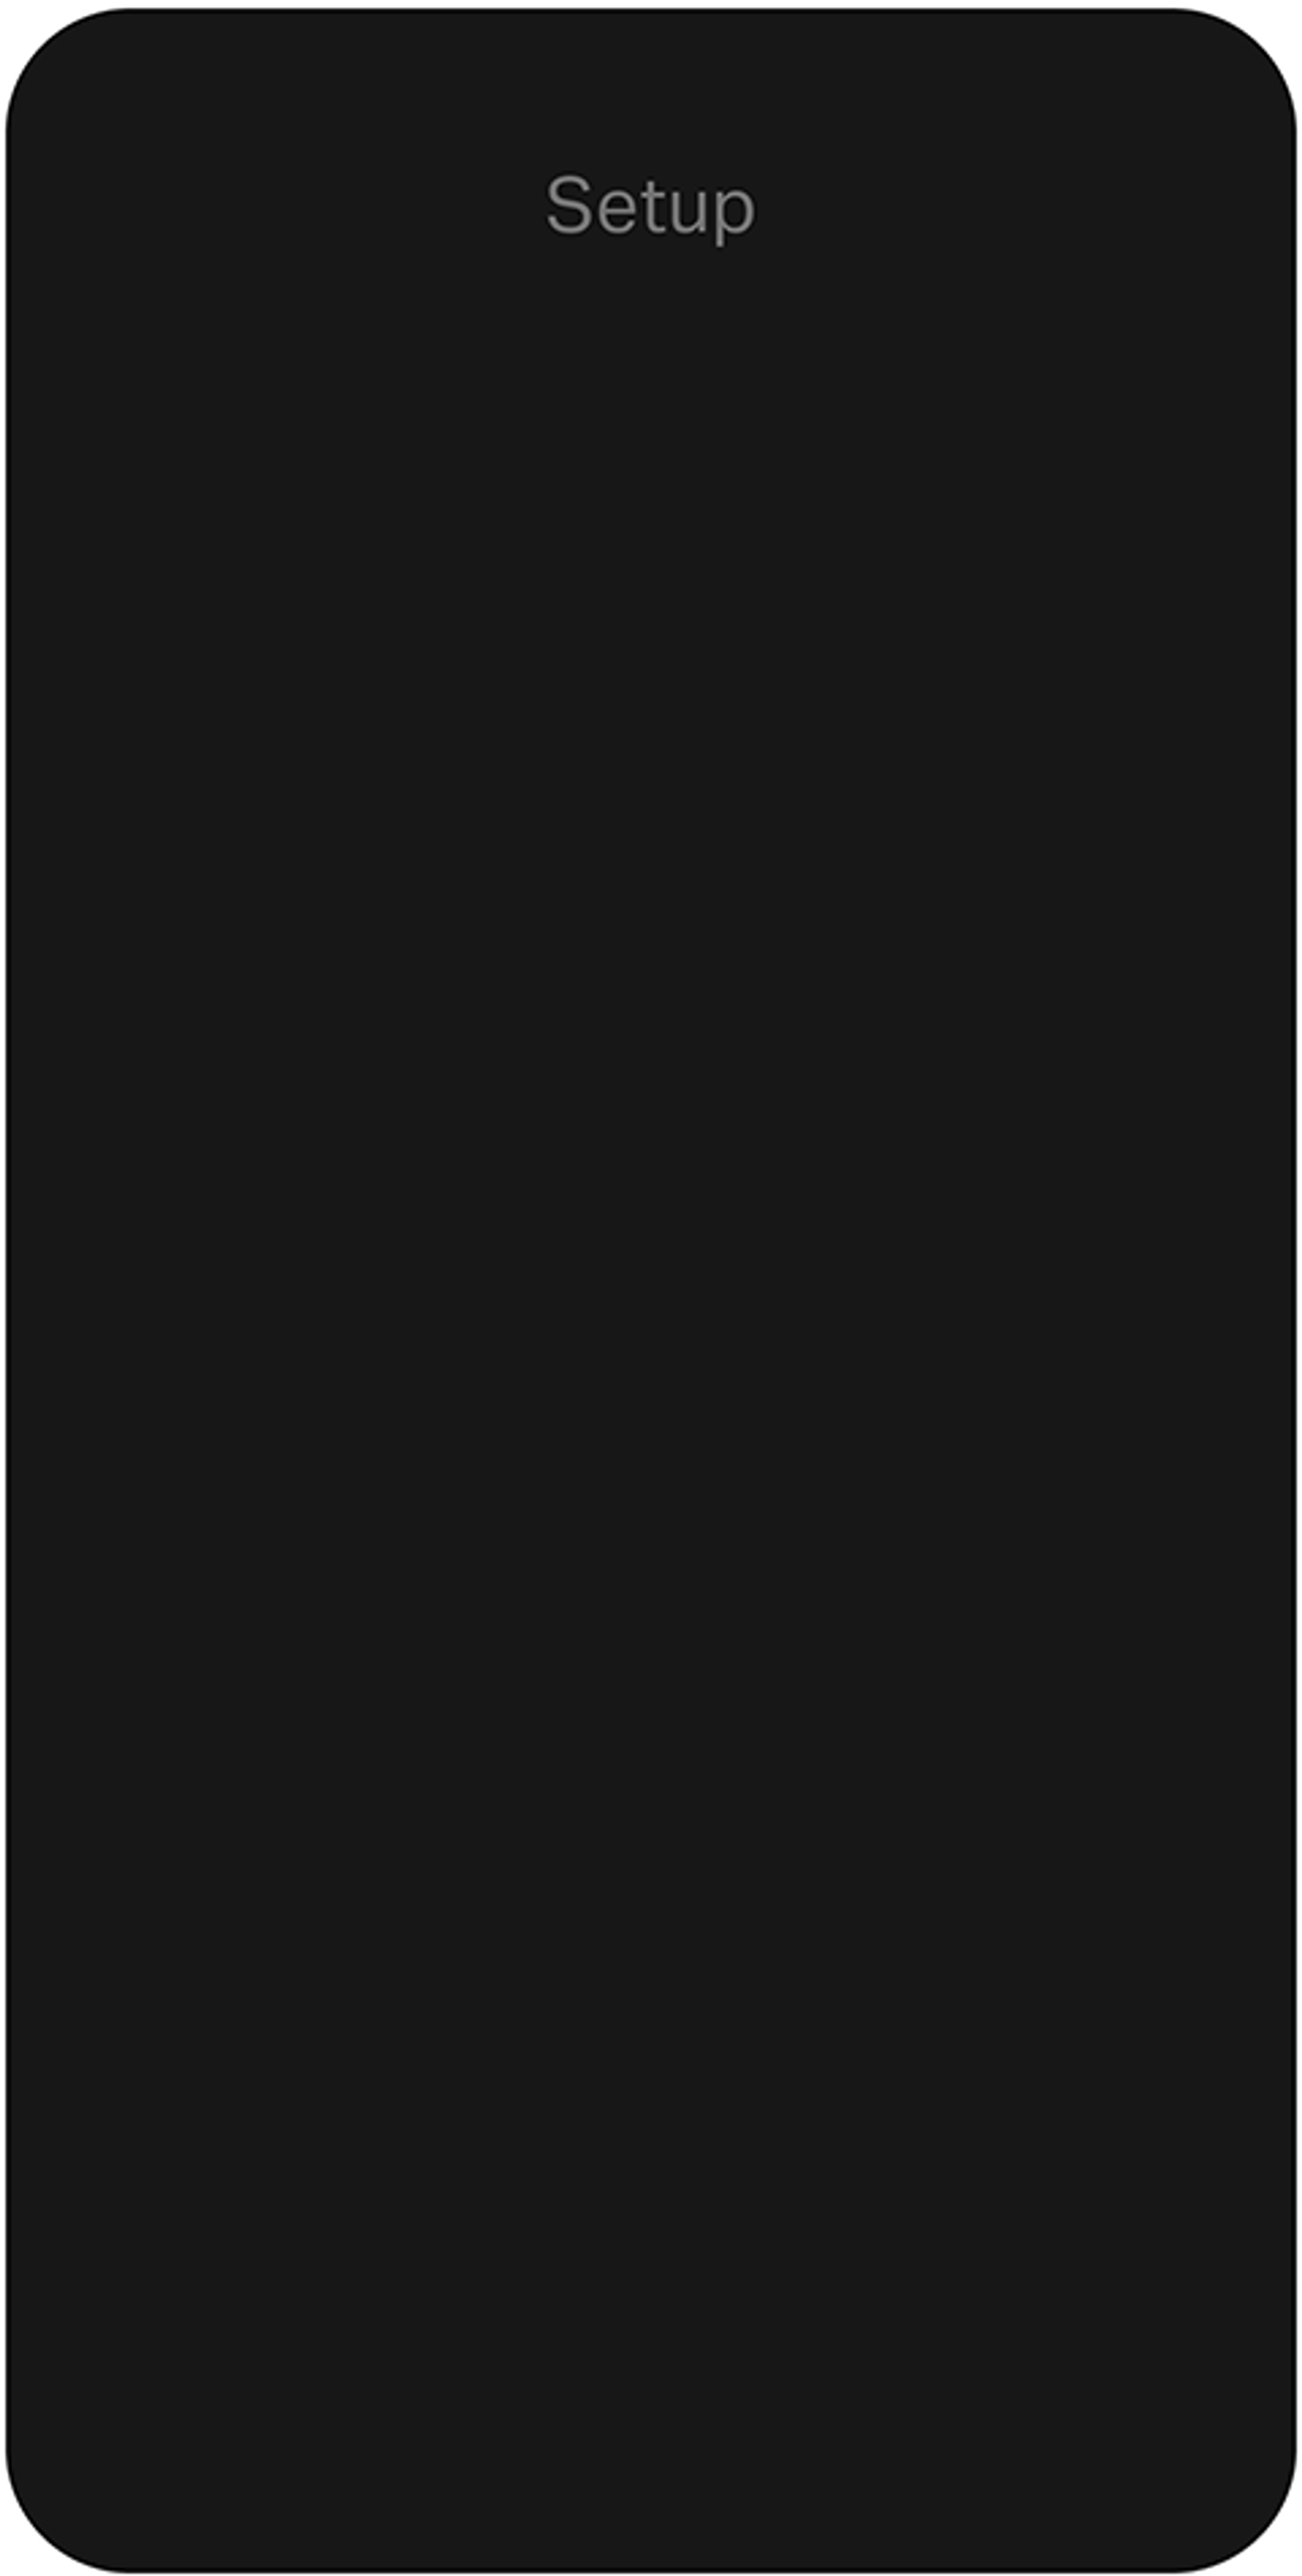 Setup blank phone rendering in black